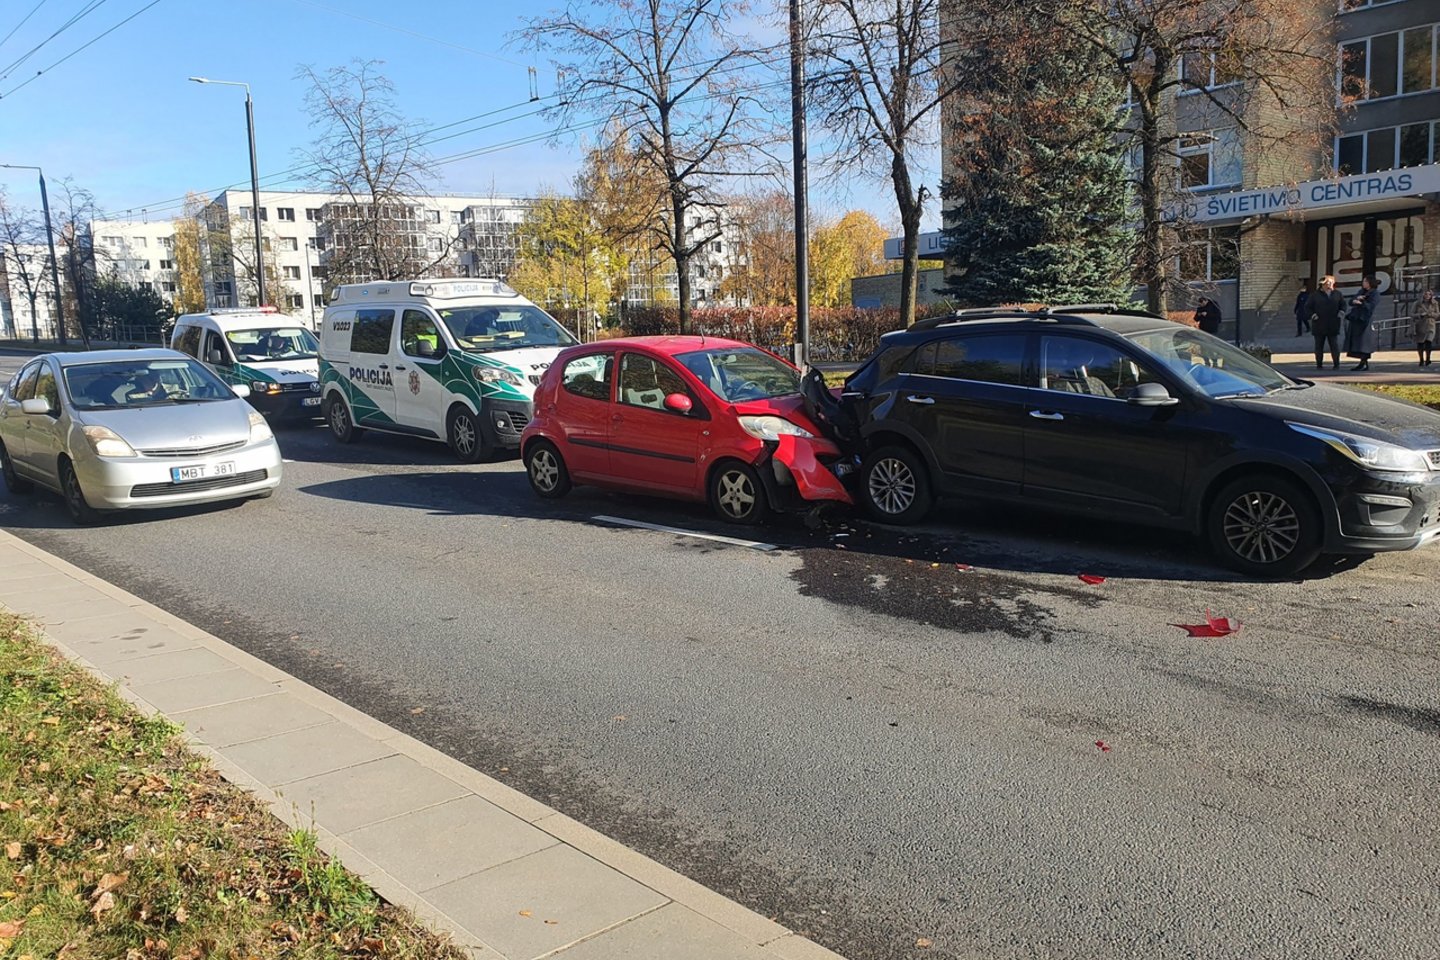  Sukėlęs 3 automobilių susidūrimą Vilniuje paspruko „Peugeot“ vairuotojas – policija paskelbė paiešką.<br> Įvykio liudininko nuotr.